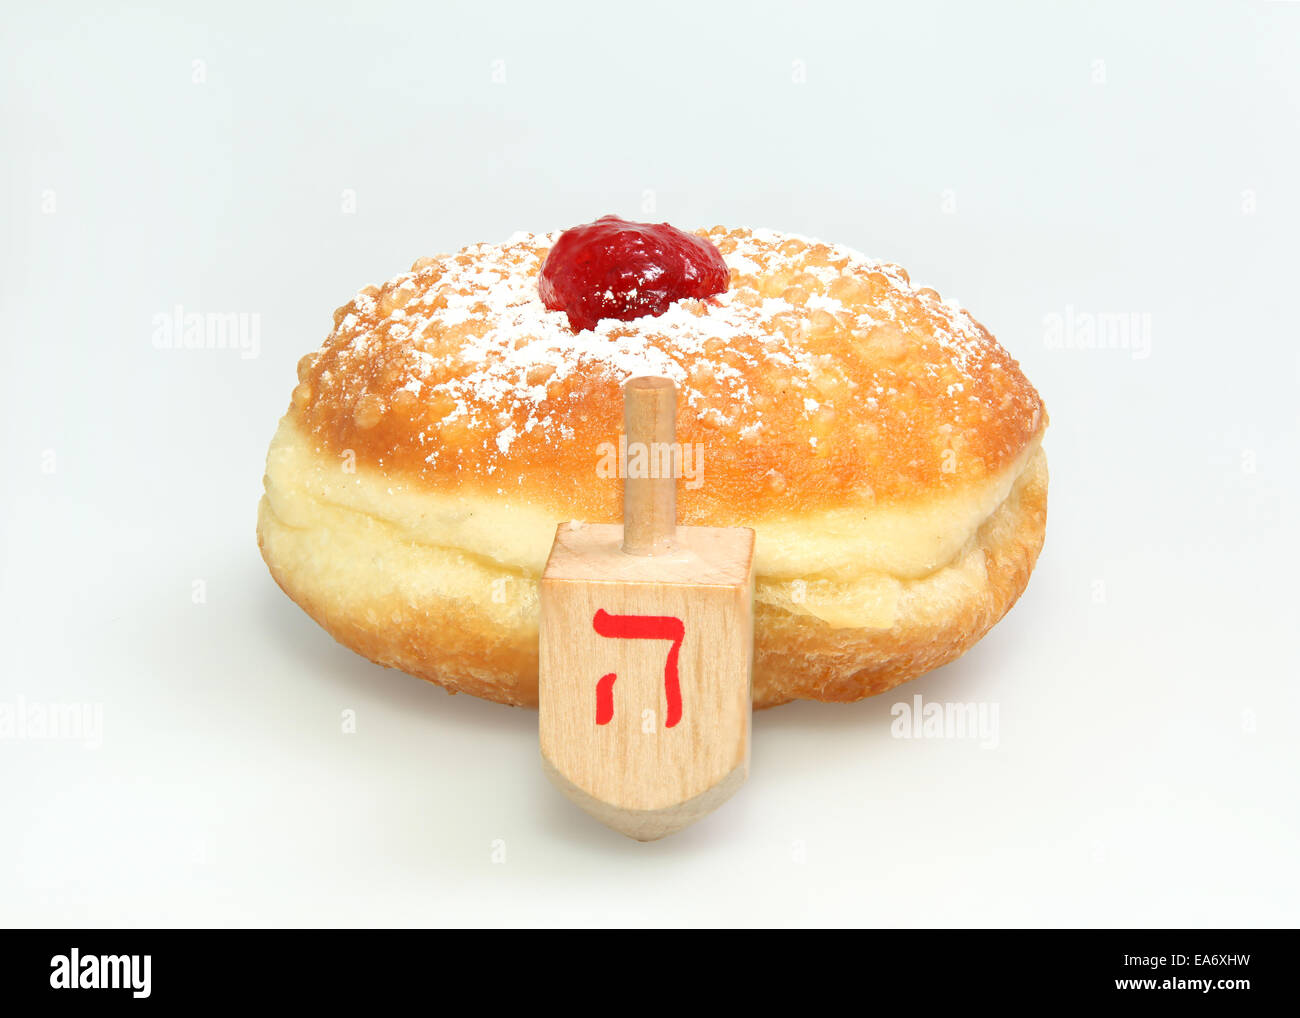 Chanukka Donut und Spinning Top - traditionelle jüdische Feiertag Lebensmittel und Spielzeug. Stockfoto